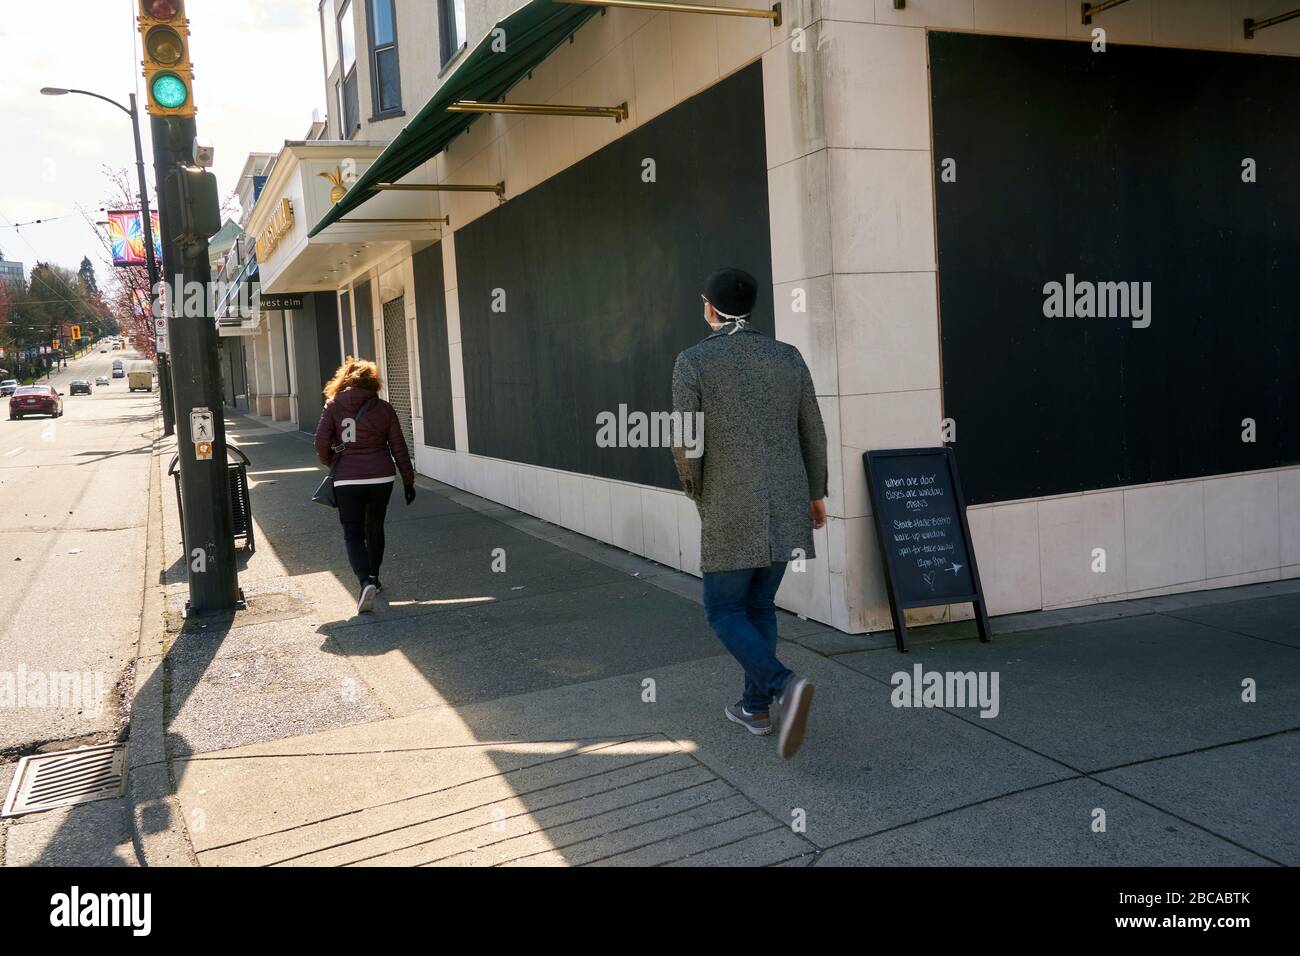 Vancouver, Kanada, 03. April 2020. Die Menschen laufen an Geschäften in der South Granville Street vorbei, die während der COVD-19-Pandemie geentert wurden, um Beutezüge zu verhindern. Stockfoto